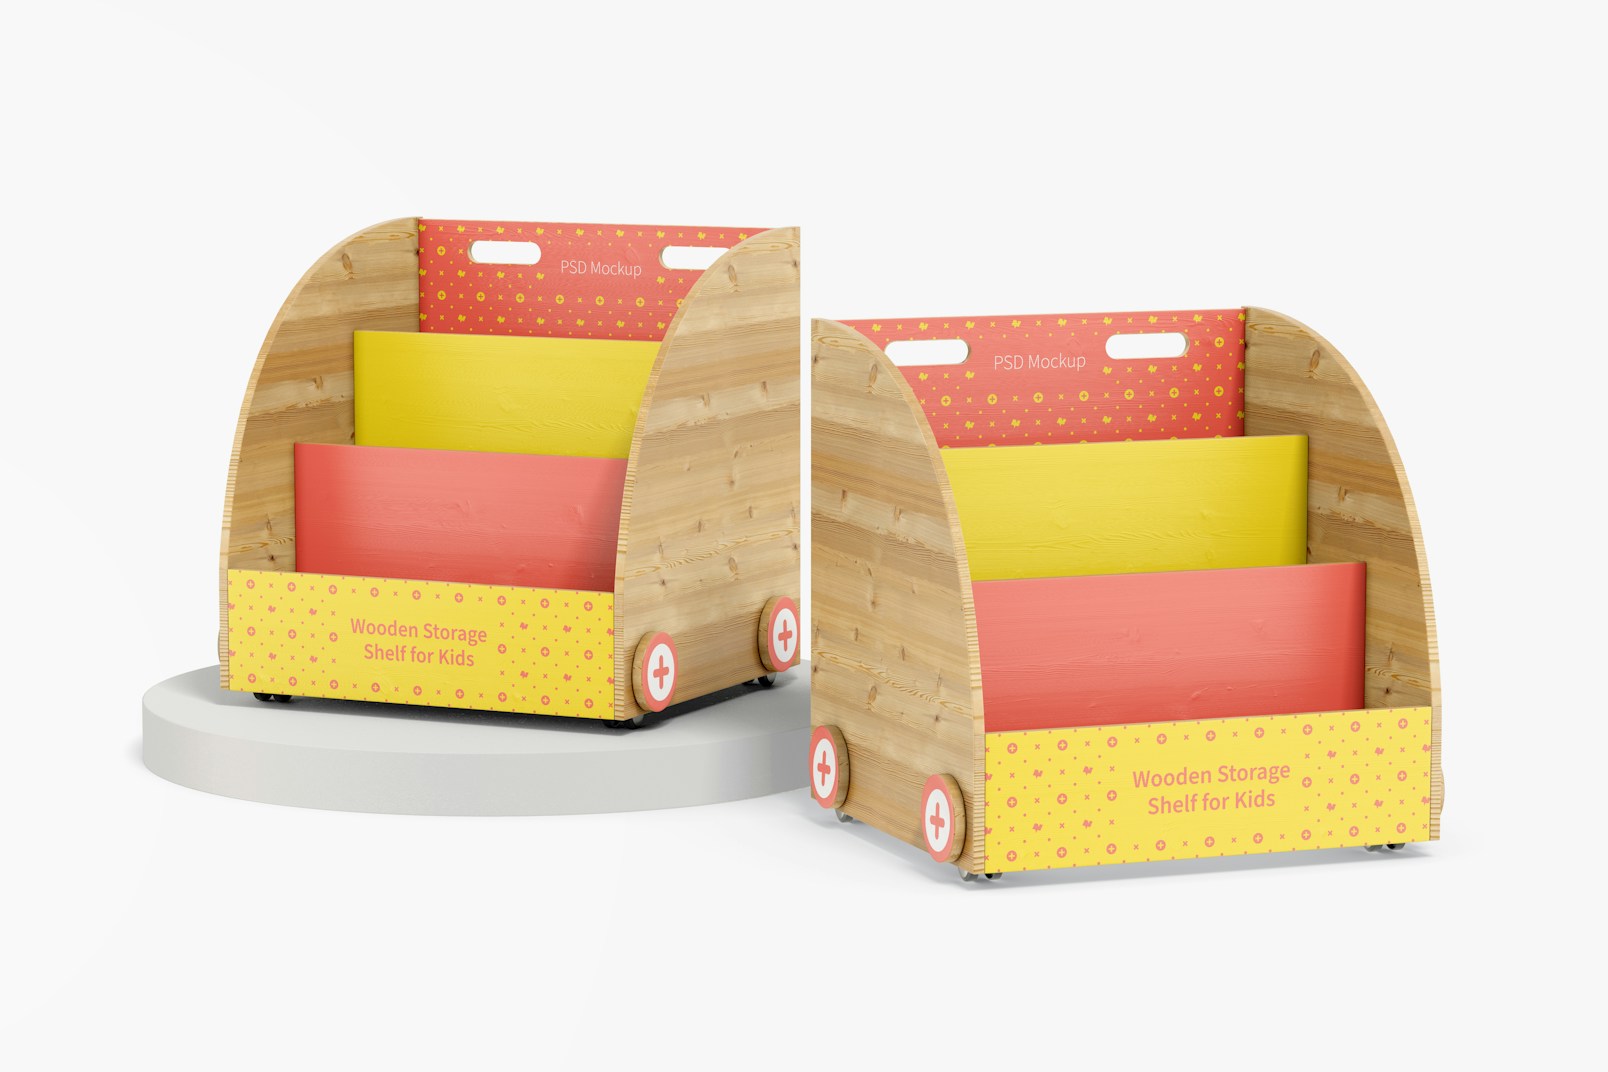 Wooden Storage Shelves for Kids Mockup, Perspective